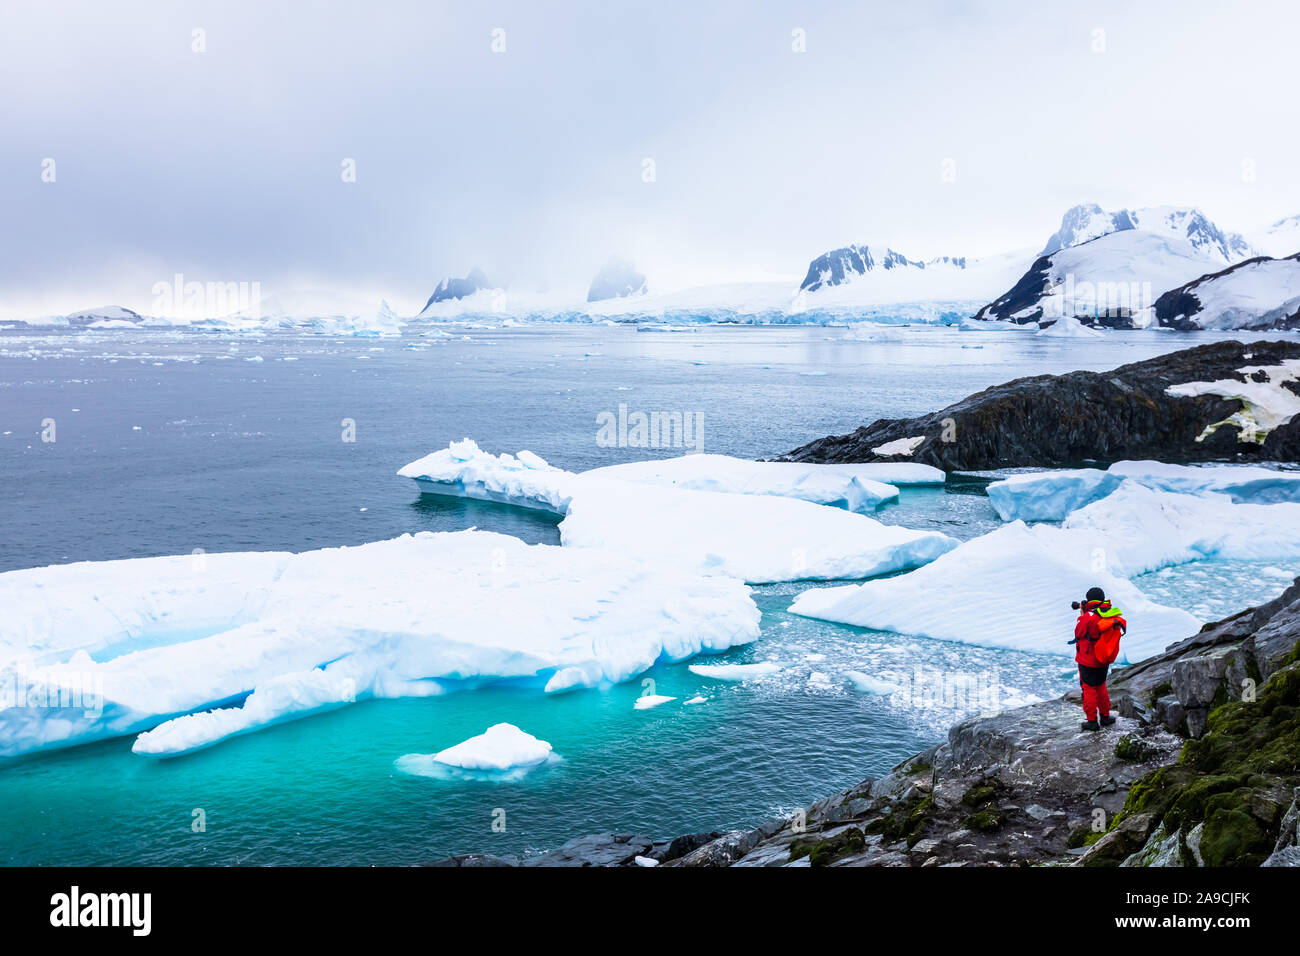 Prise de photos touristiques du paysage gelé incroyable dans l'Antarctique avec les icebergs, la neige, les montagnes et les glaciers, belle nature en Péninsule Antarctique w Banque D'Images